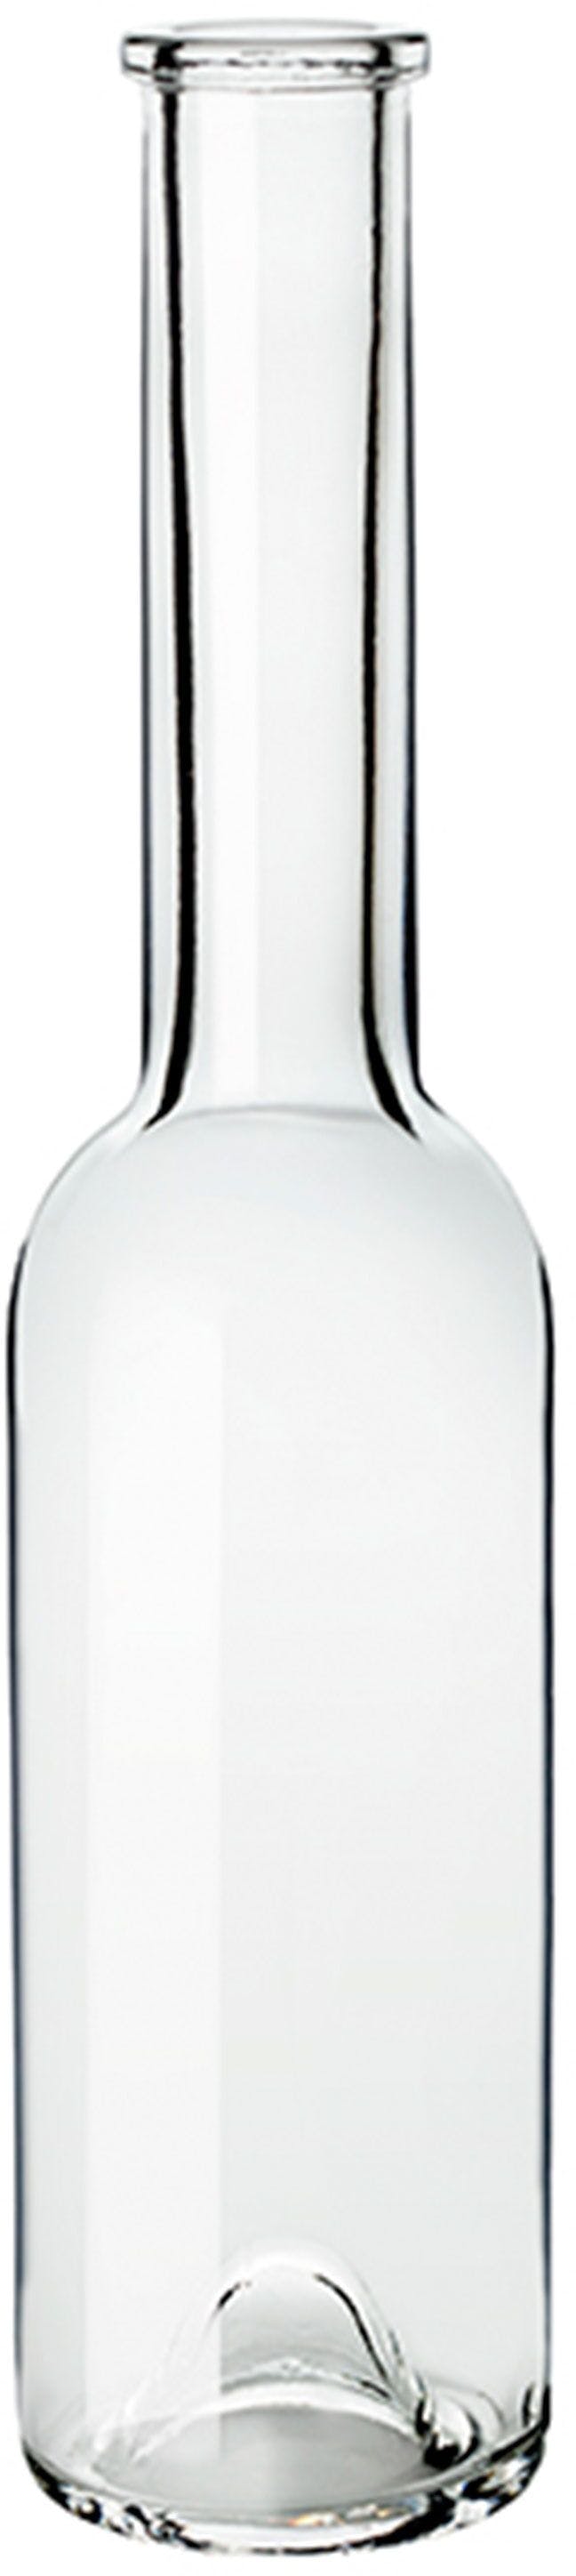 Bottle SINFONIA  OPERA 250 ml BG-Cork